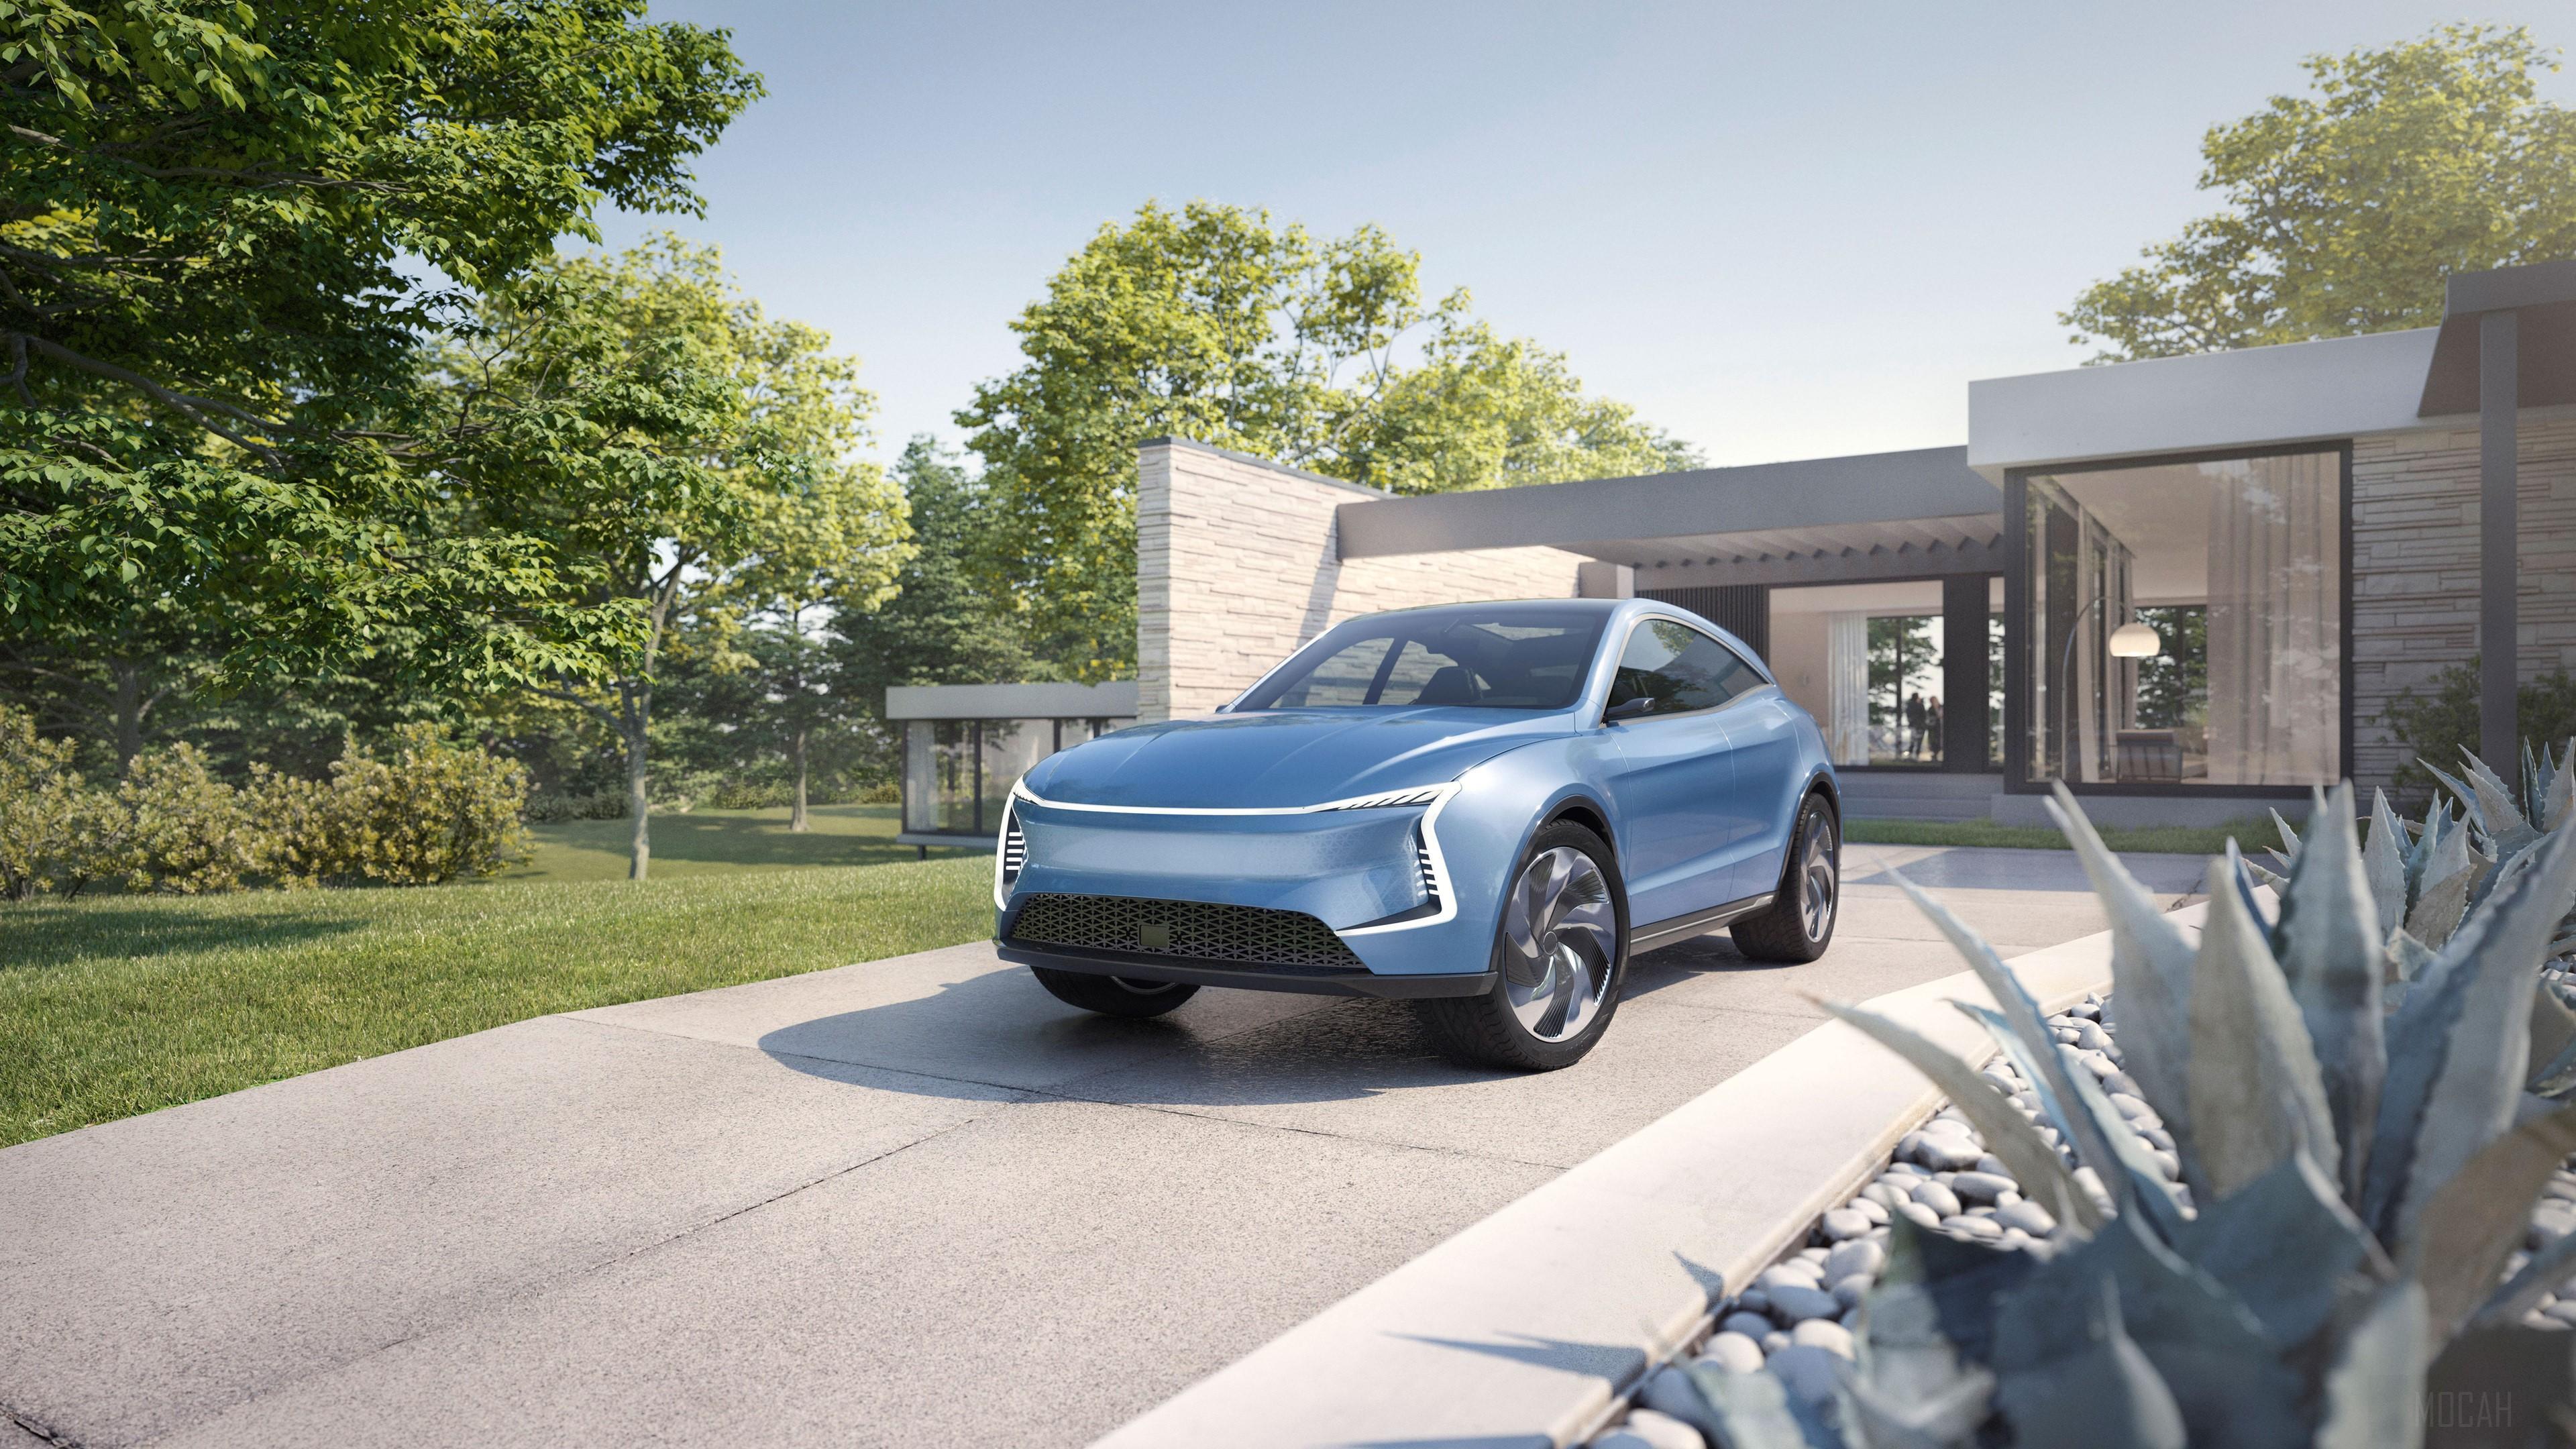 HD wallpaper, 2019 Sf Motors Sf5 Concept Car 4K